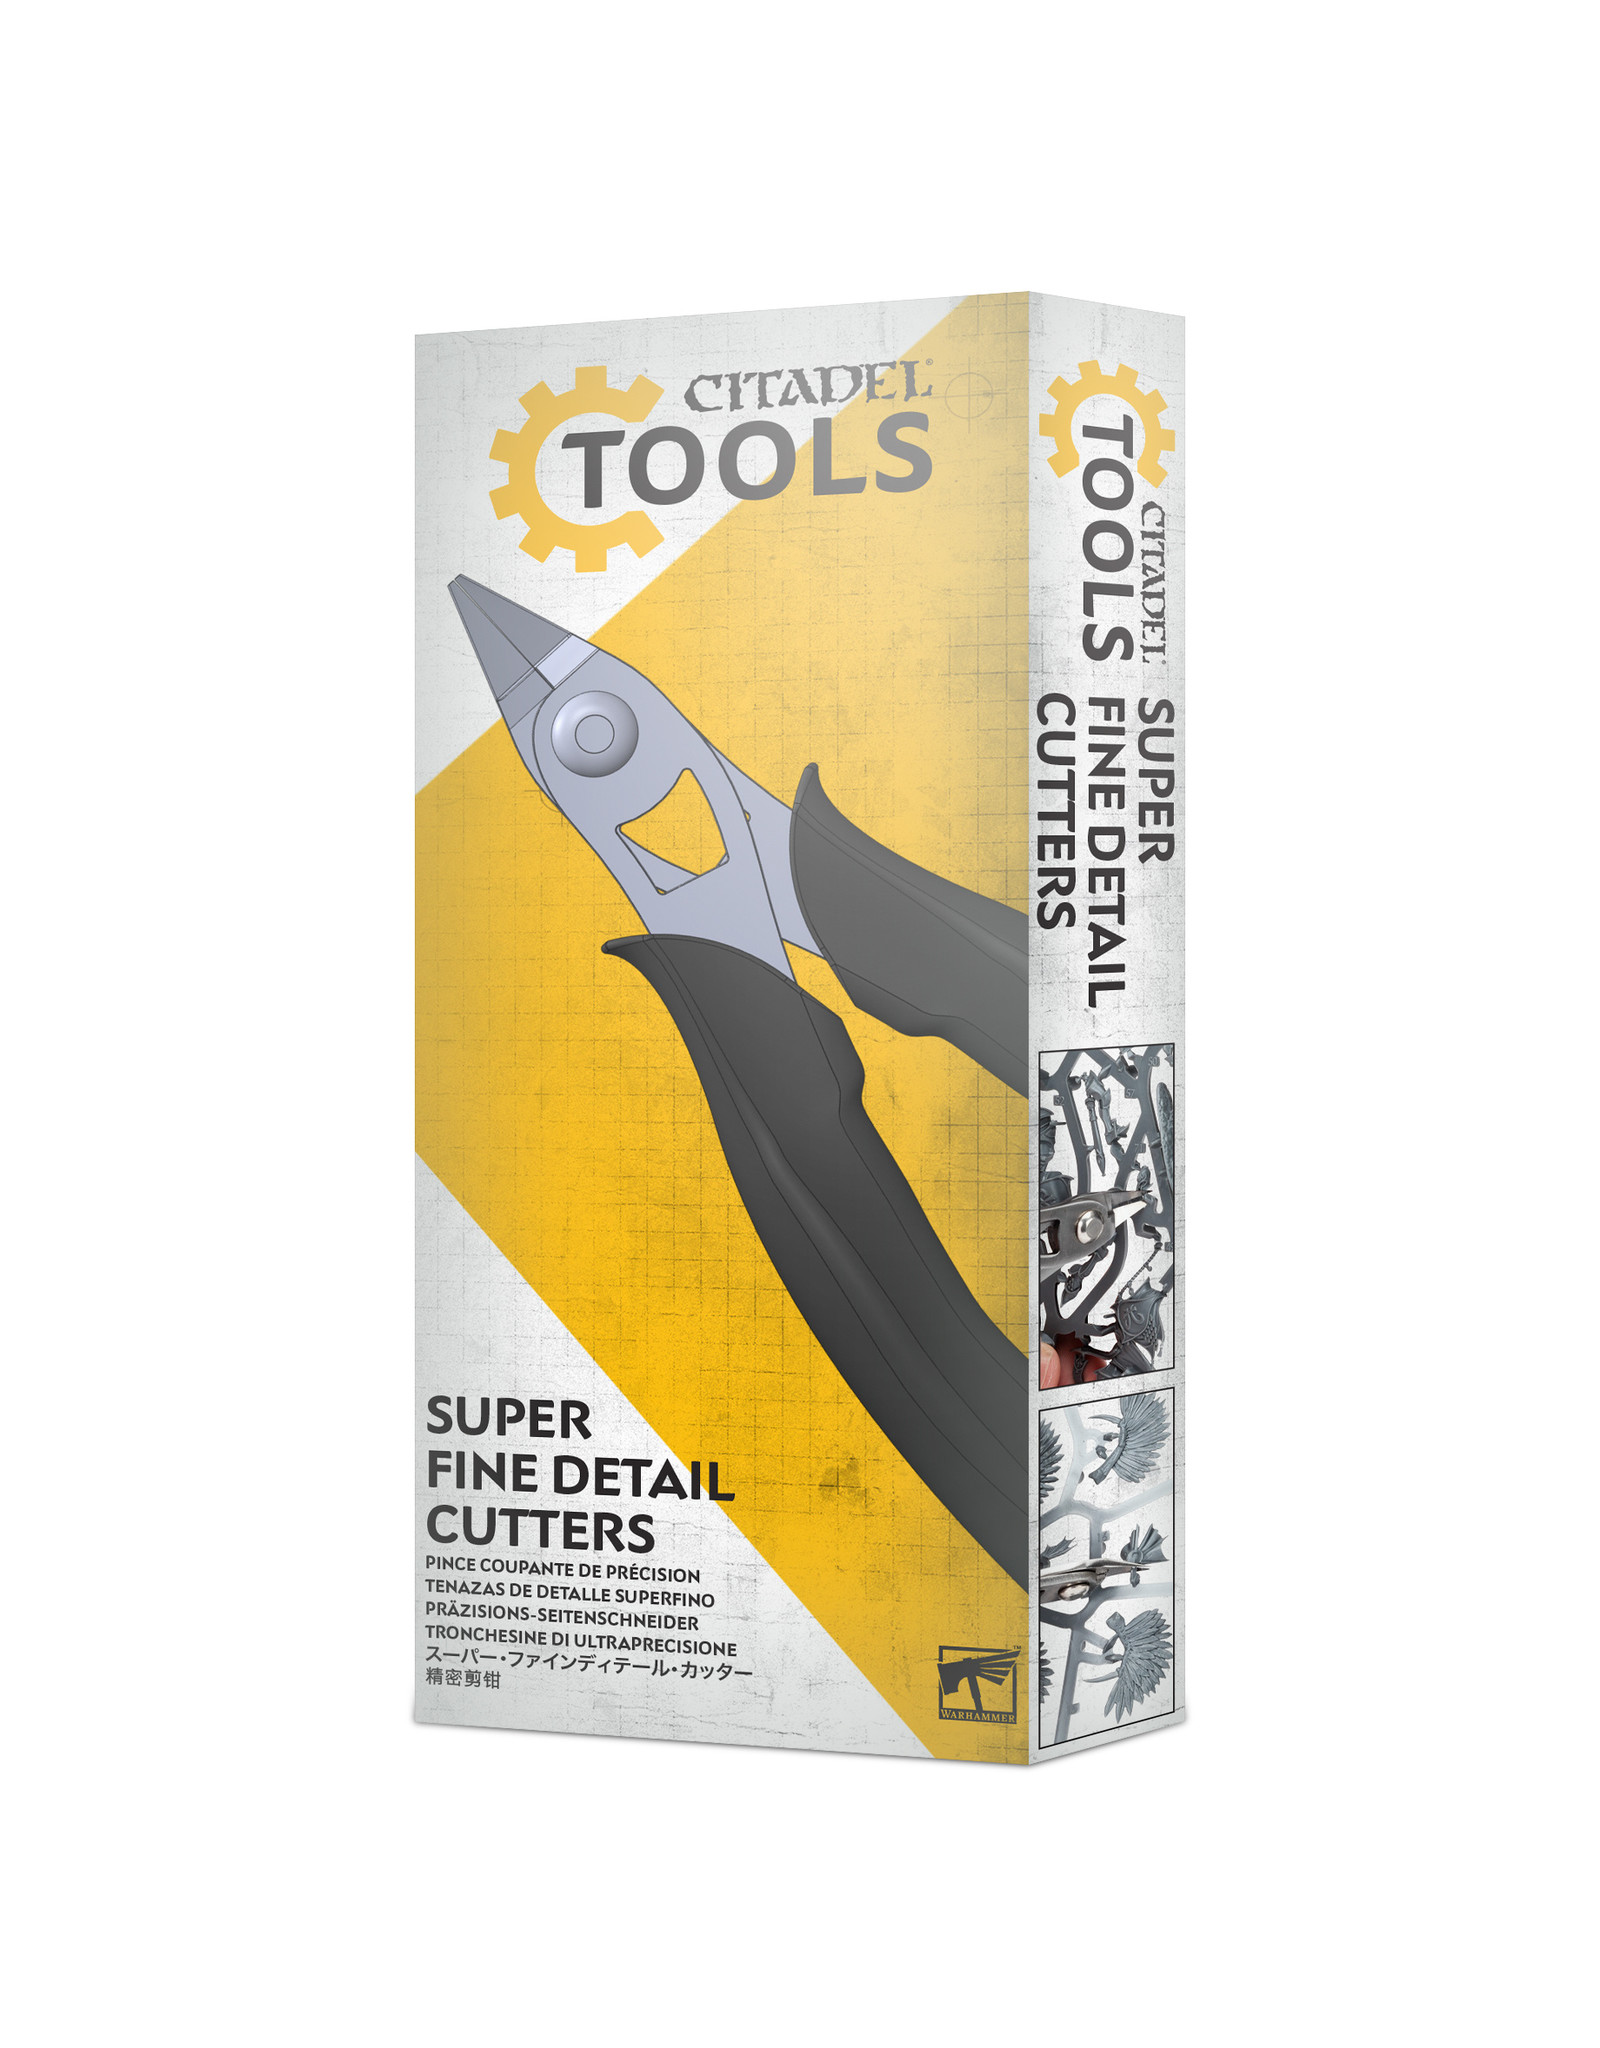 Citadel Citadel Tools: Super Fine Detail Cutters